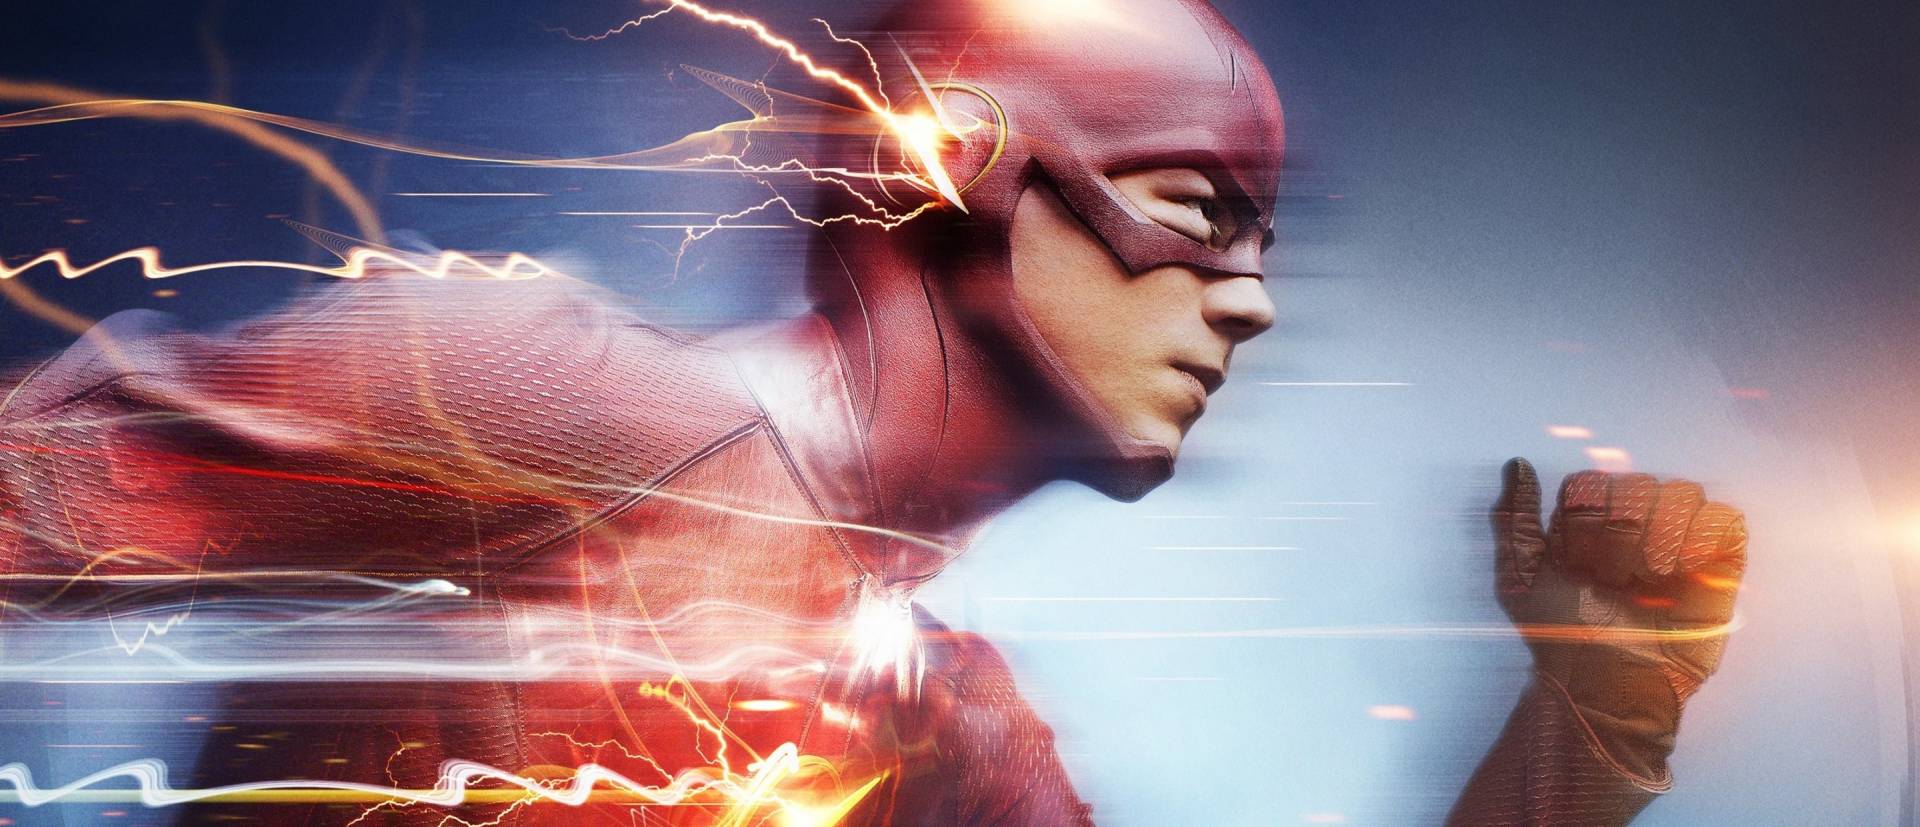 Végre hozzánk is befutott The Flash